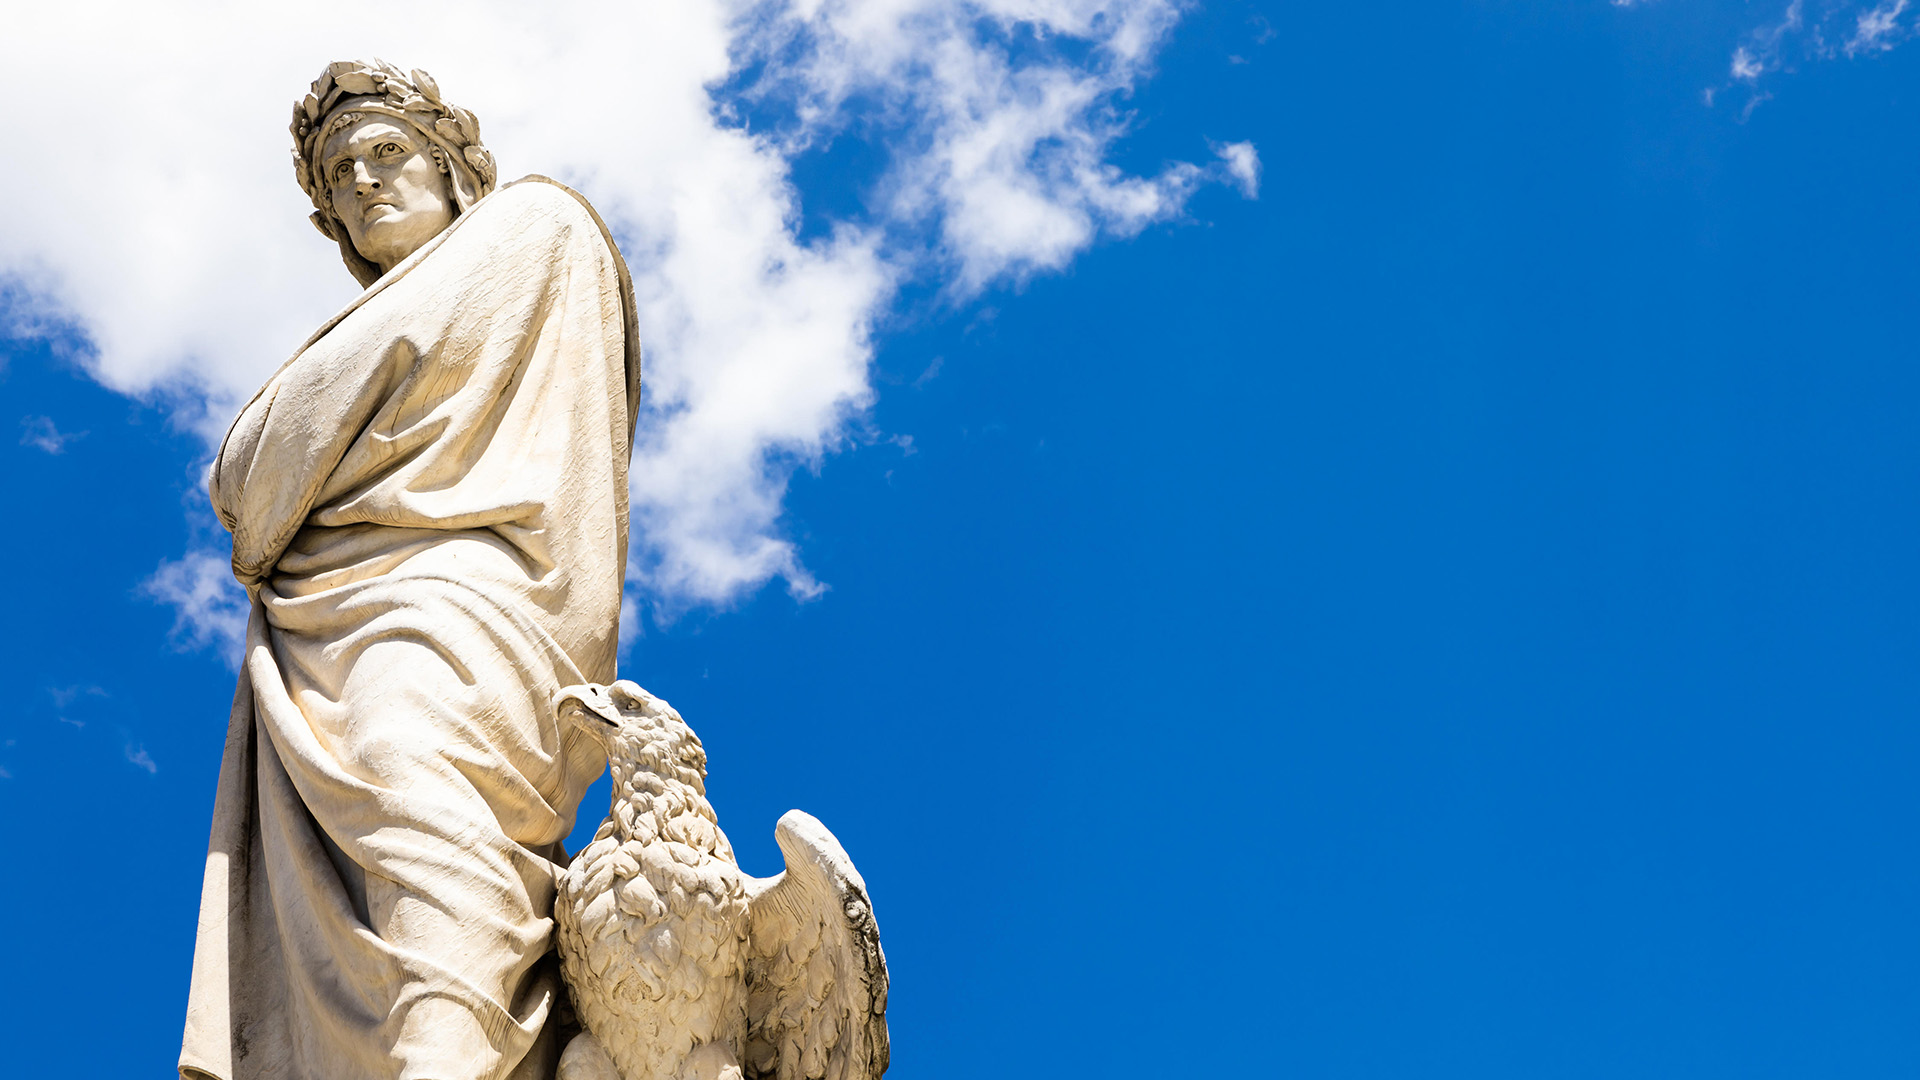 Statue des italienischen Nationaldichters Dante Alighieri in Florenz | picture alliance / Zoonar